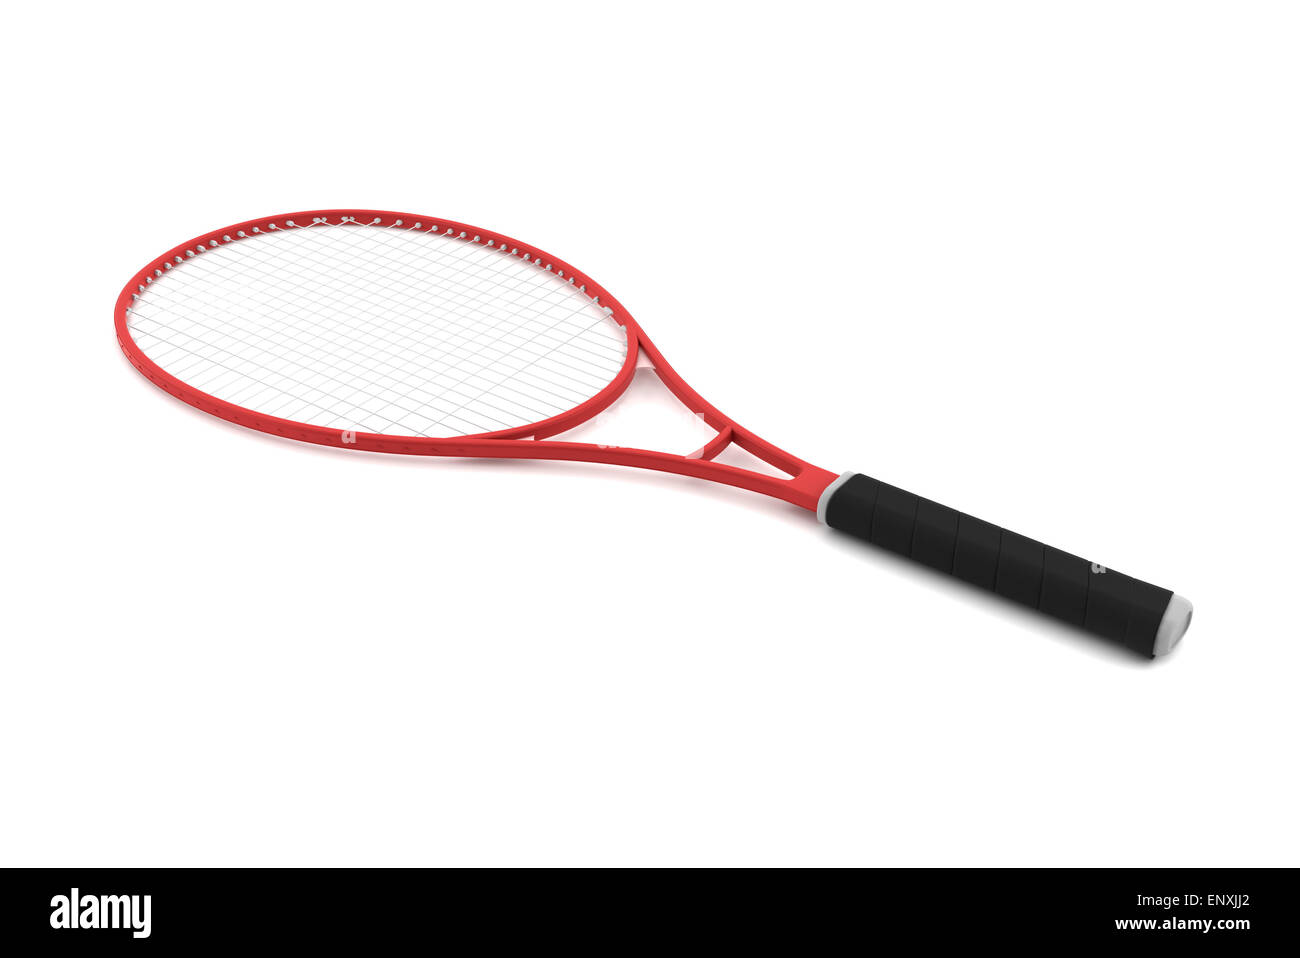 Raquette de tennis rouge isolé sur fond blanc Banque D'Images